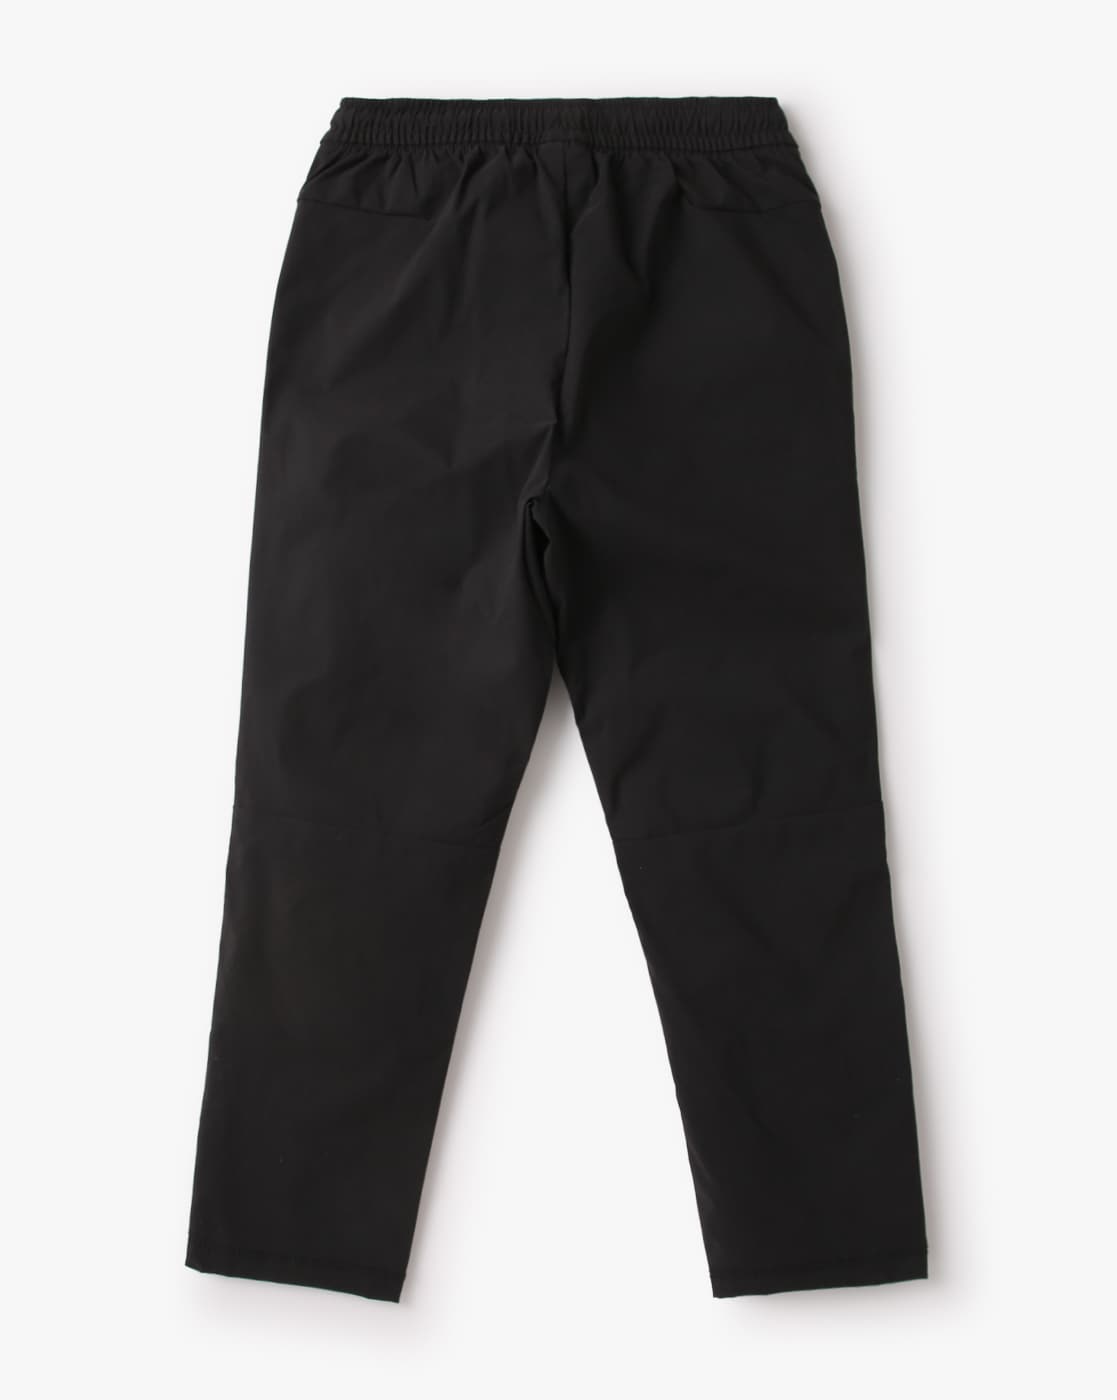 Gap 1969 Velvet Pants Womens Size 28 Brown 30x31 Slacks Always Skinny Dress  Pant | eBay